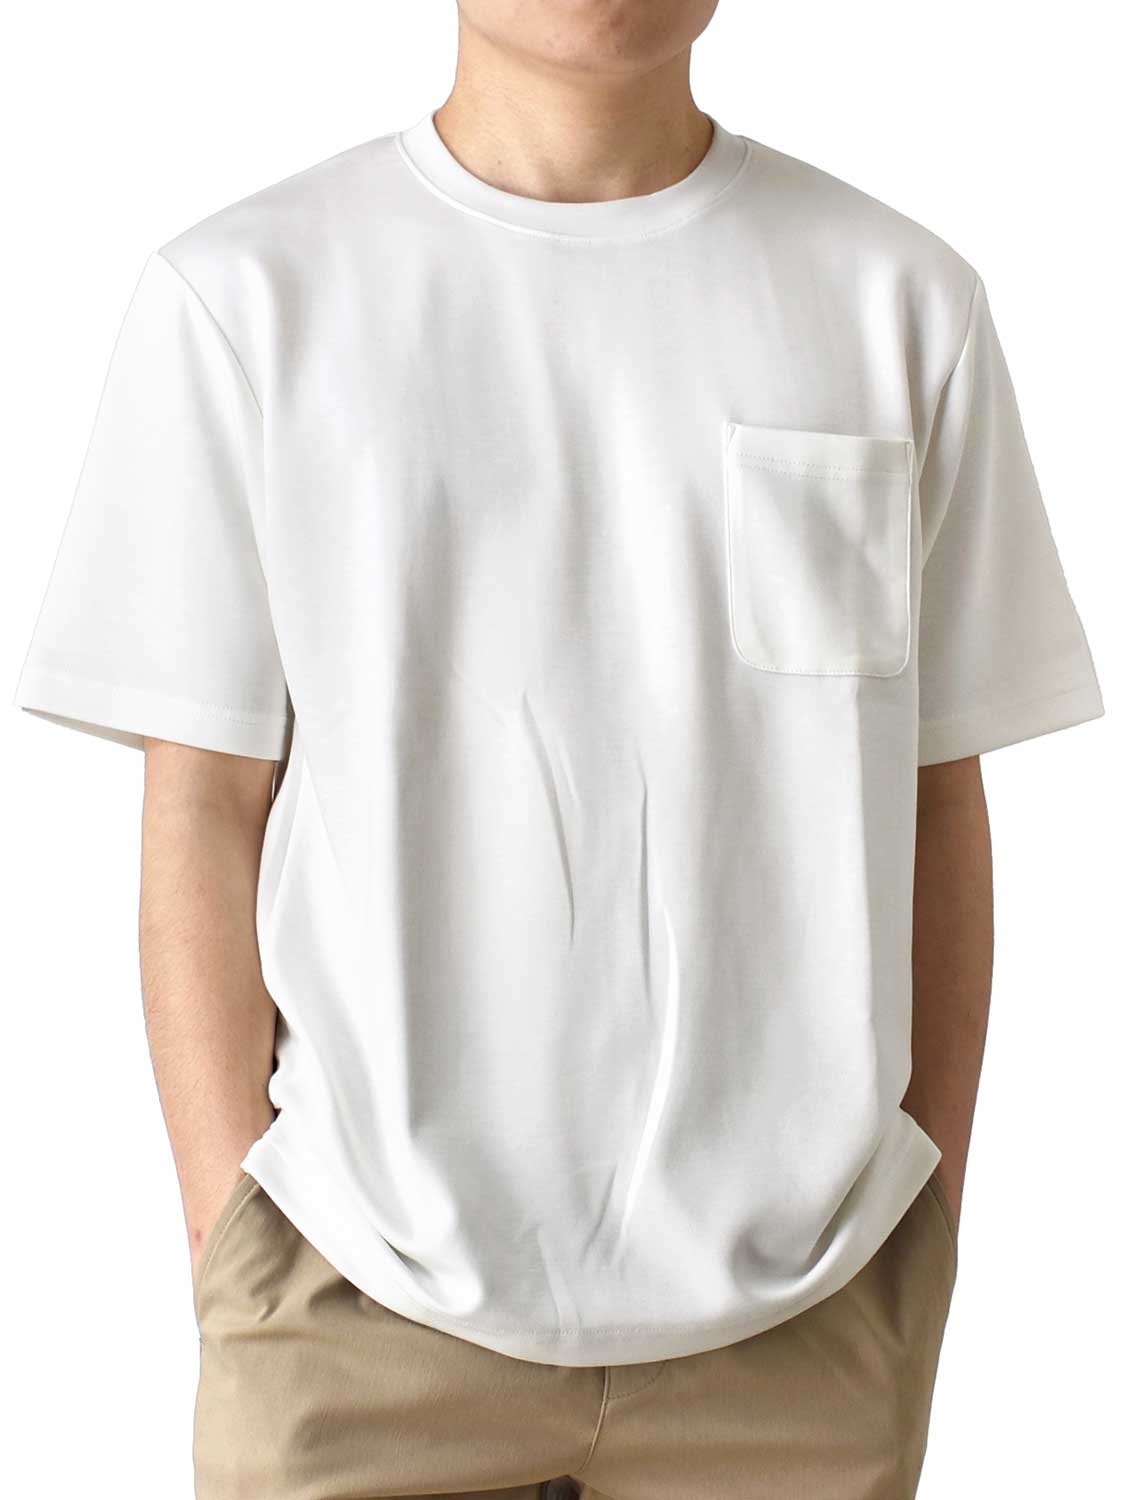 Tシャツ メンズ 半袖 接触冷感 涼しい 夏 ストレッチ クルーネック ゆったり ふわとろ くすみカラー 柔らかい ポケット付き 白 送料無料 通販Y